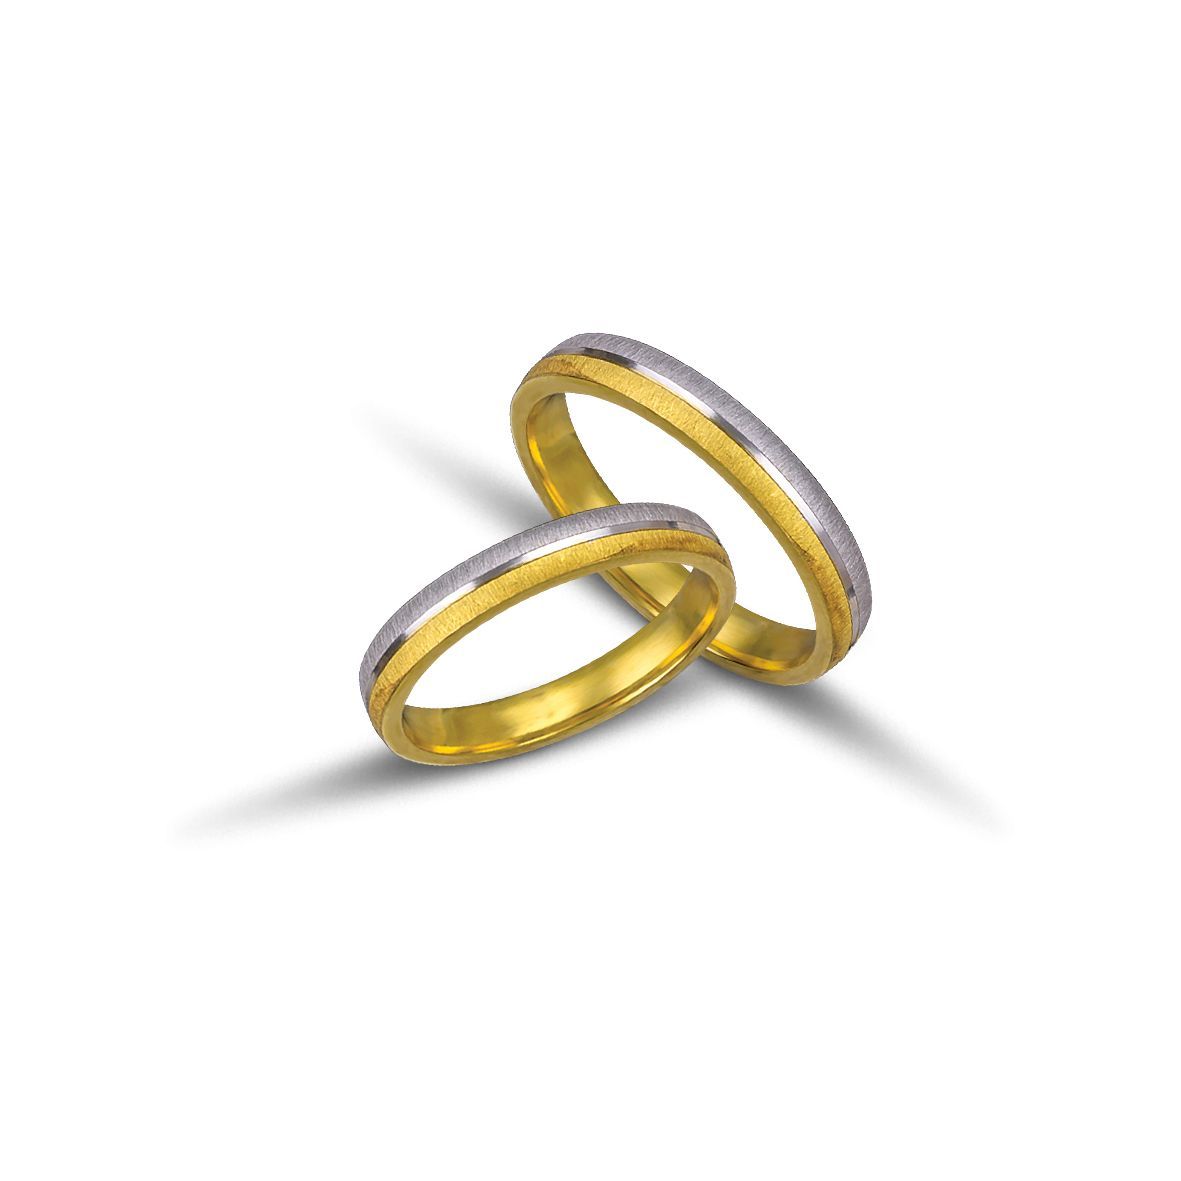 White gold & gold wedding rings 3.2mm  (code VK1056/32)